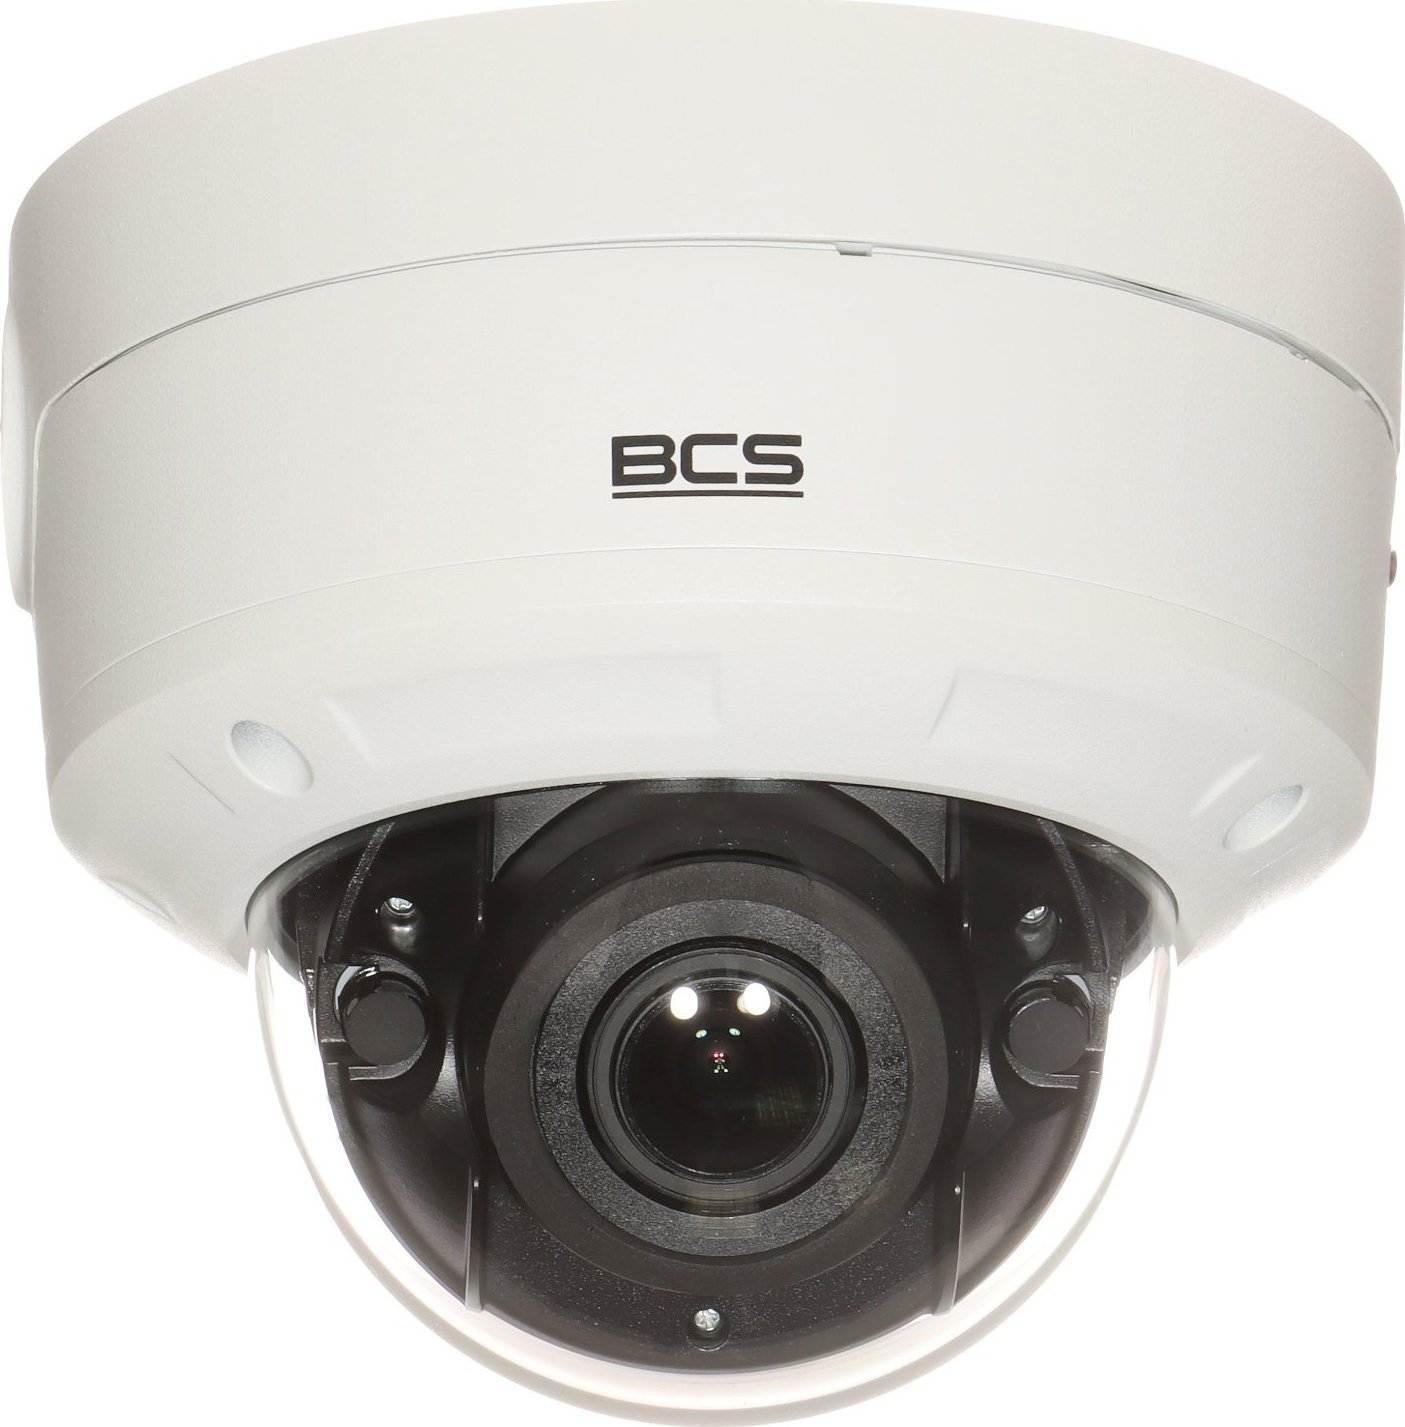 Kamera IP BCS View Kamera wandaloodporna IP BCS-V-DIP58VSR4-AI2 - 8.3 Mpx, 4K UHD 2.8 ... 12 mm - MOTOZOOM BCS View